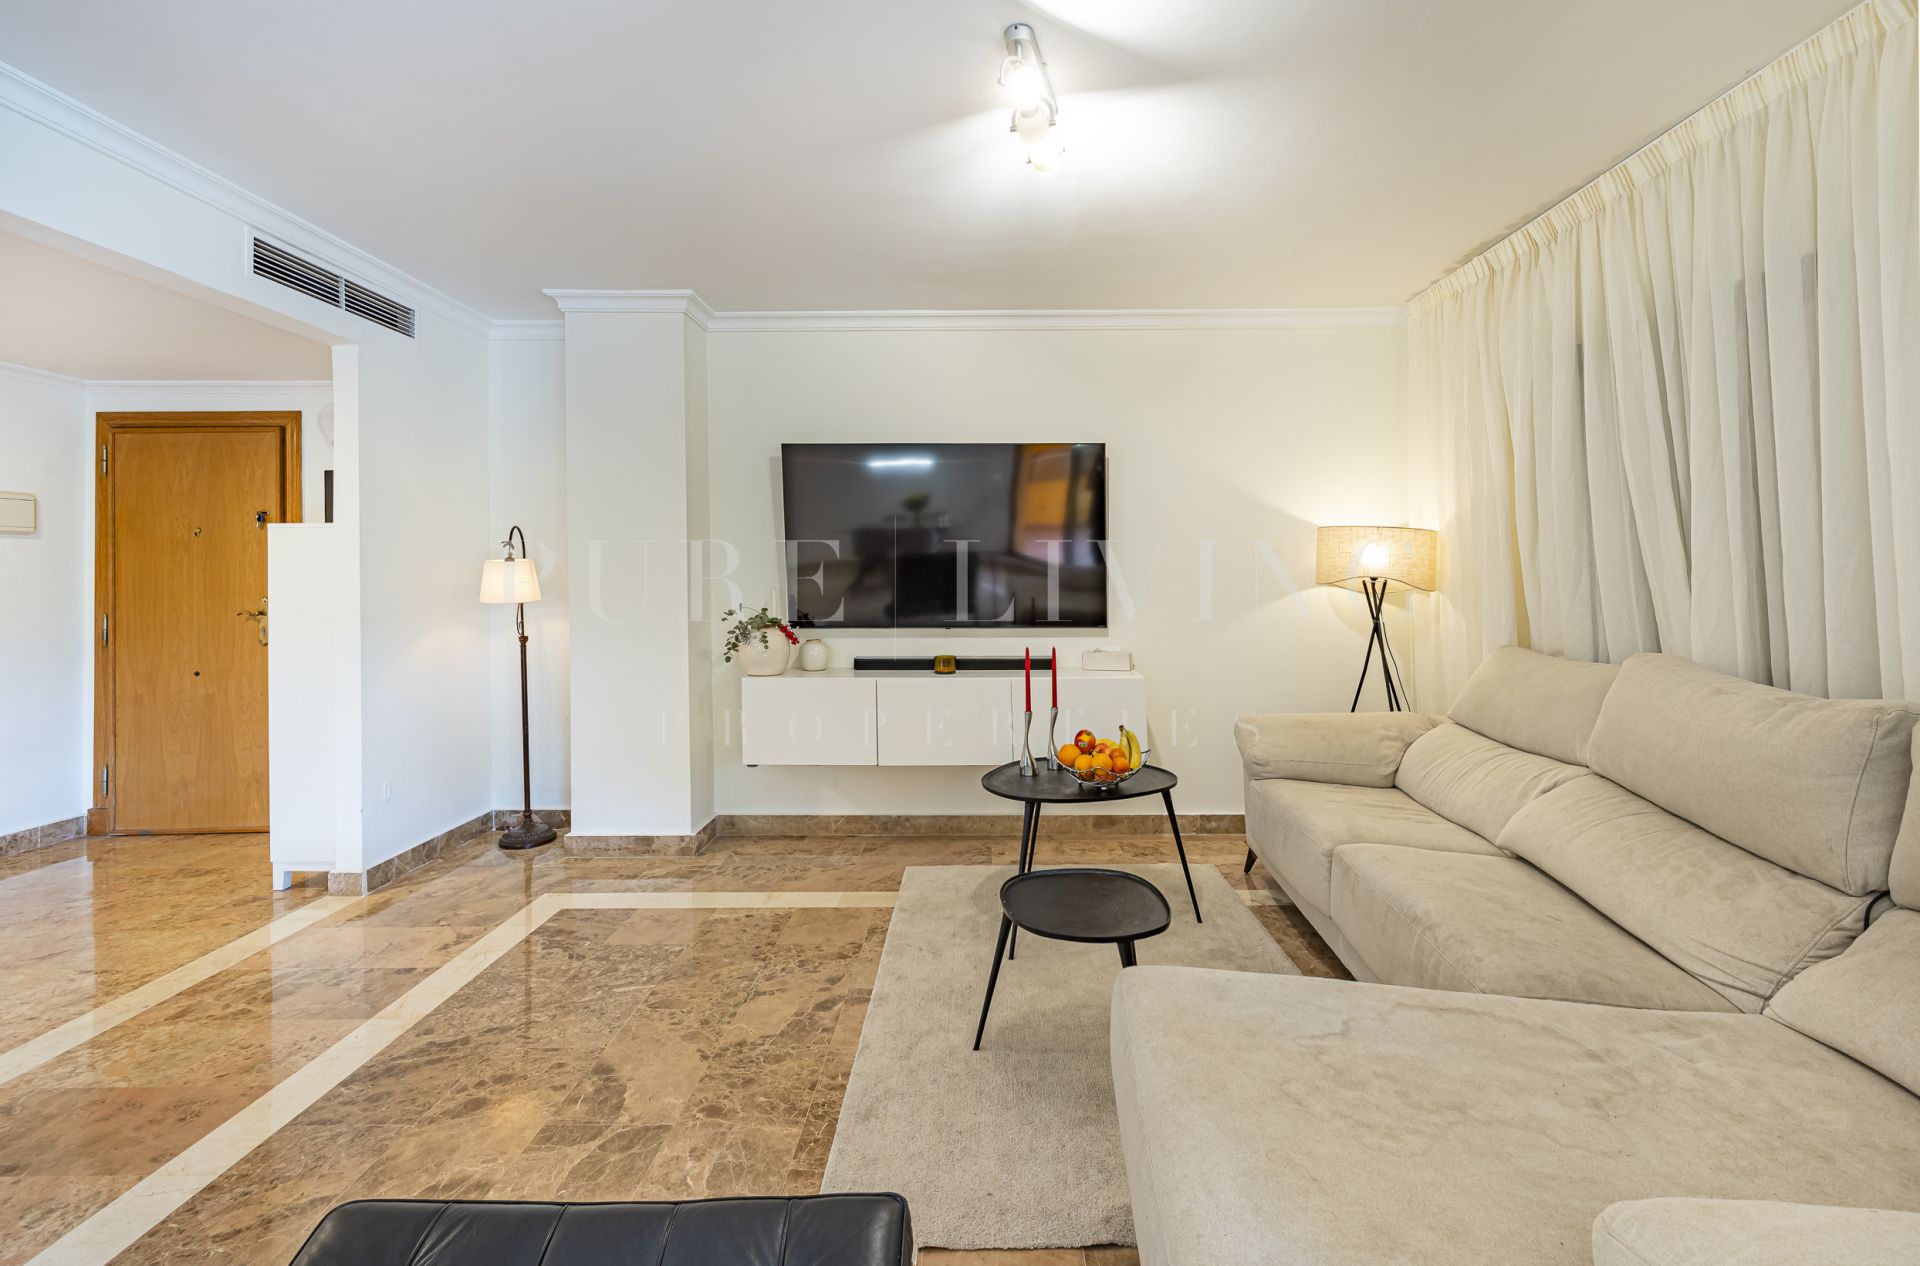 Impresionante apartamento de cuatro dormitorios situado en una ubicación privilegiada en Cortijo Blanco, San Pedro de Alcántara.